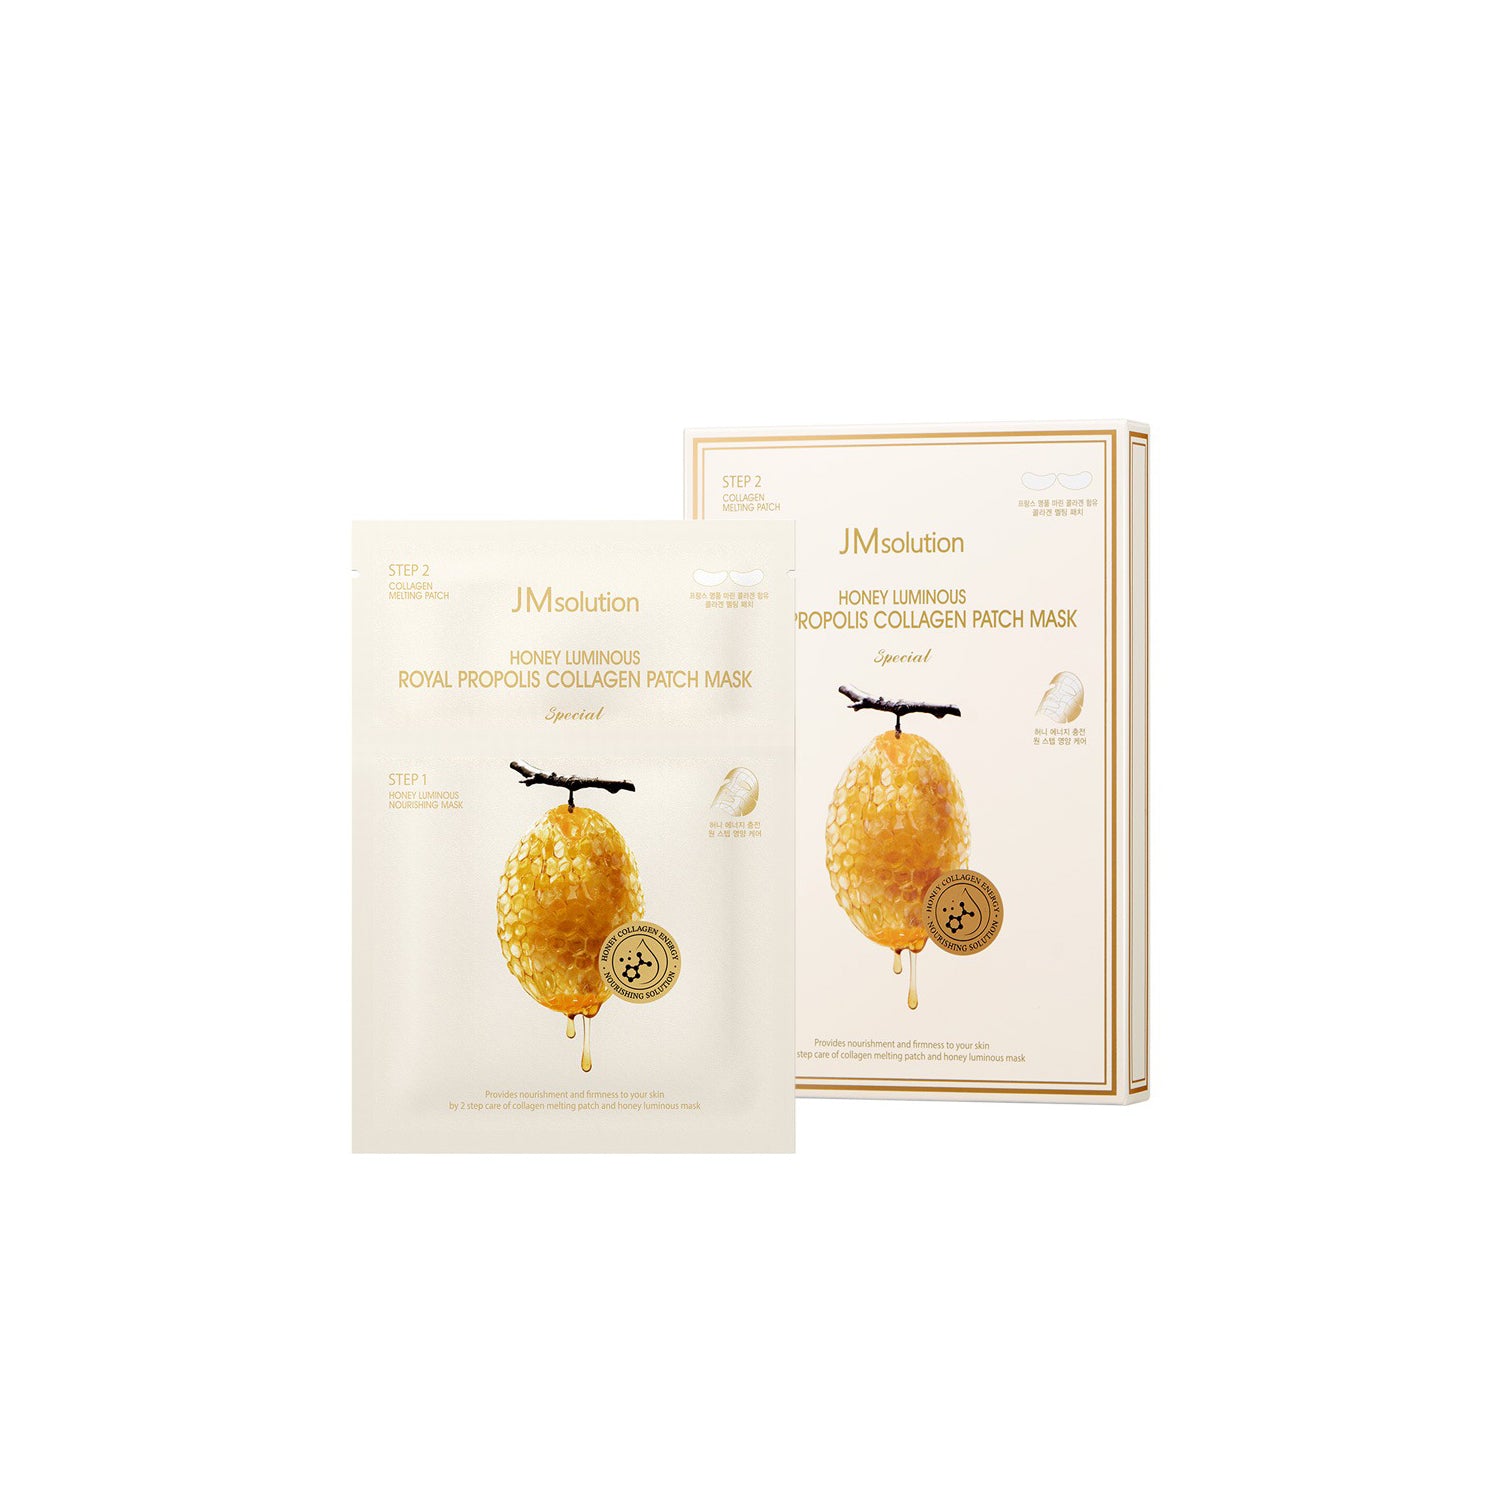 JM Solution Honey Luminous Royal Propolis Collagen Patch Mask Beauty JM Solution 1 Sheet  